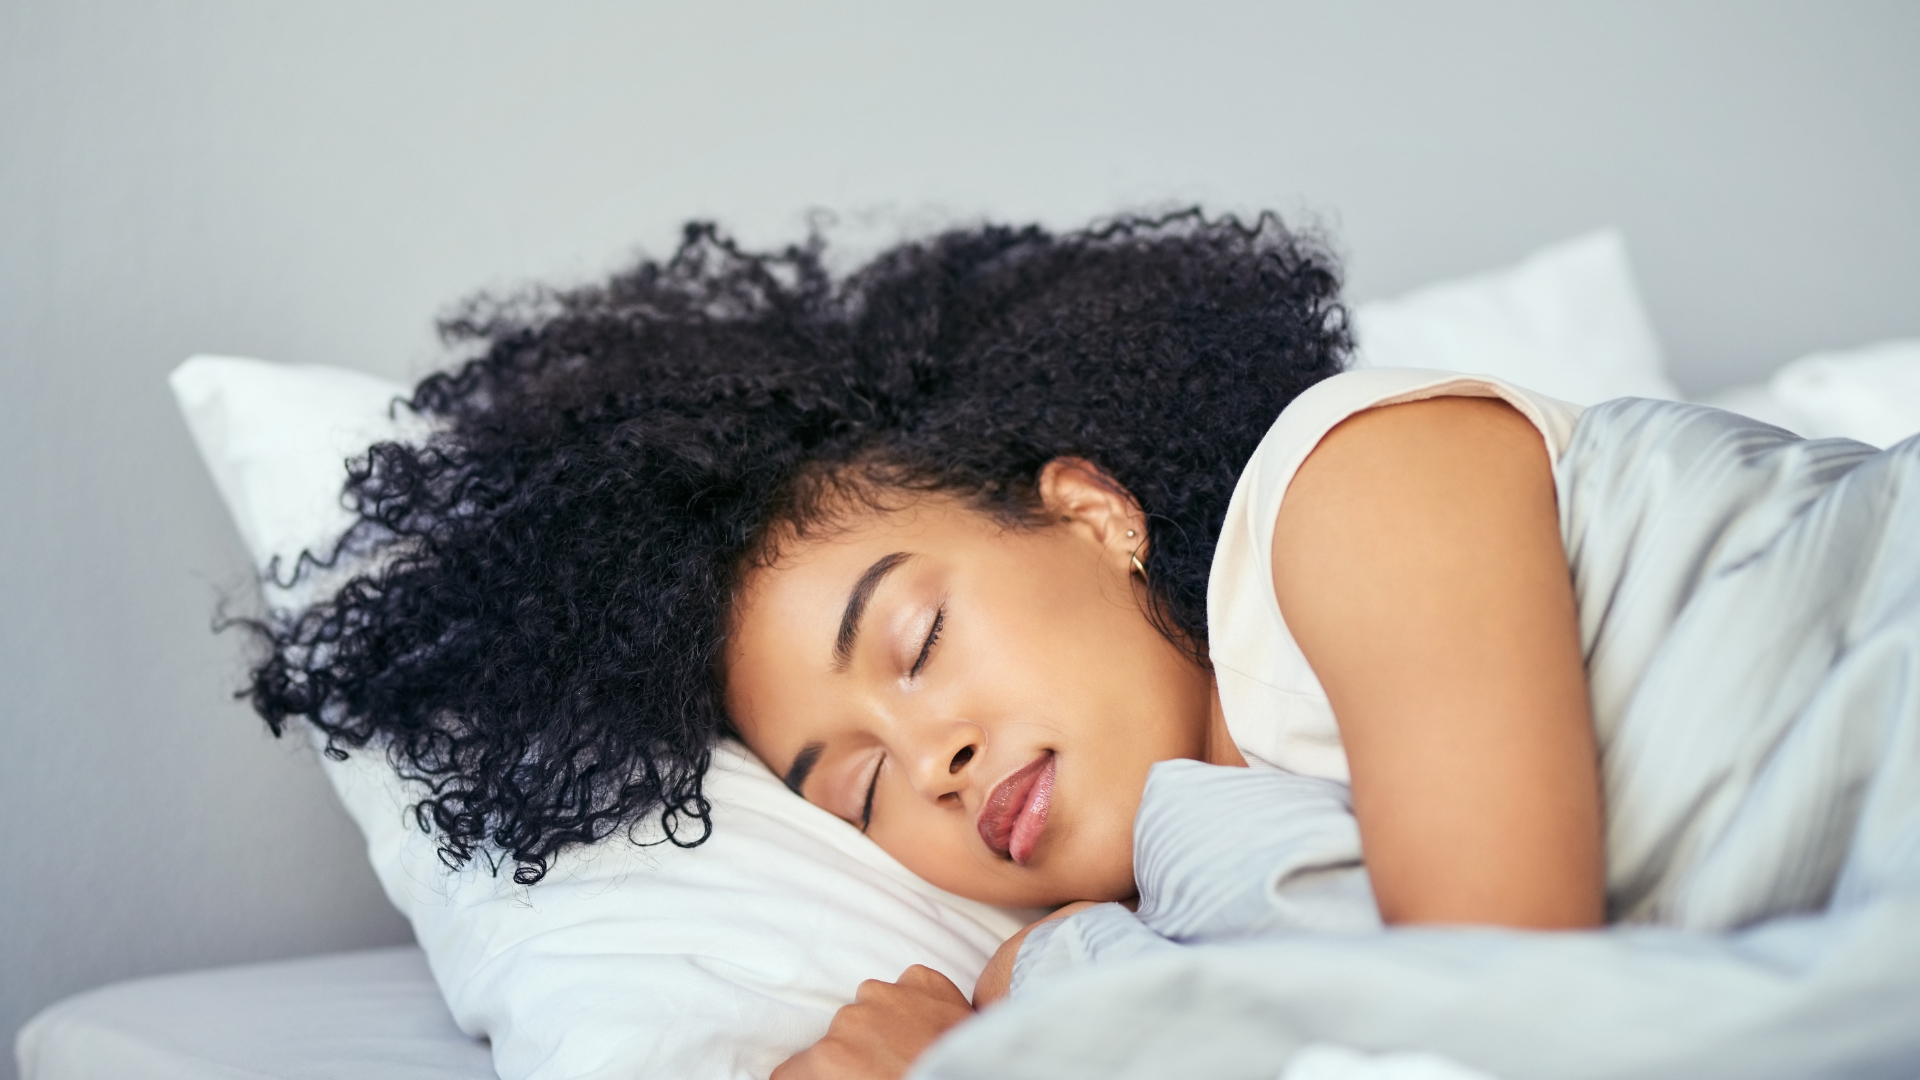 Este método promete que una persona se dormirá en tan solo 60 segundos